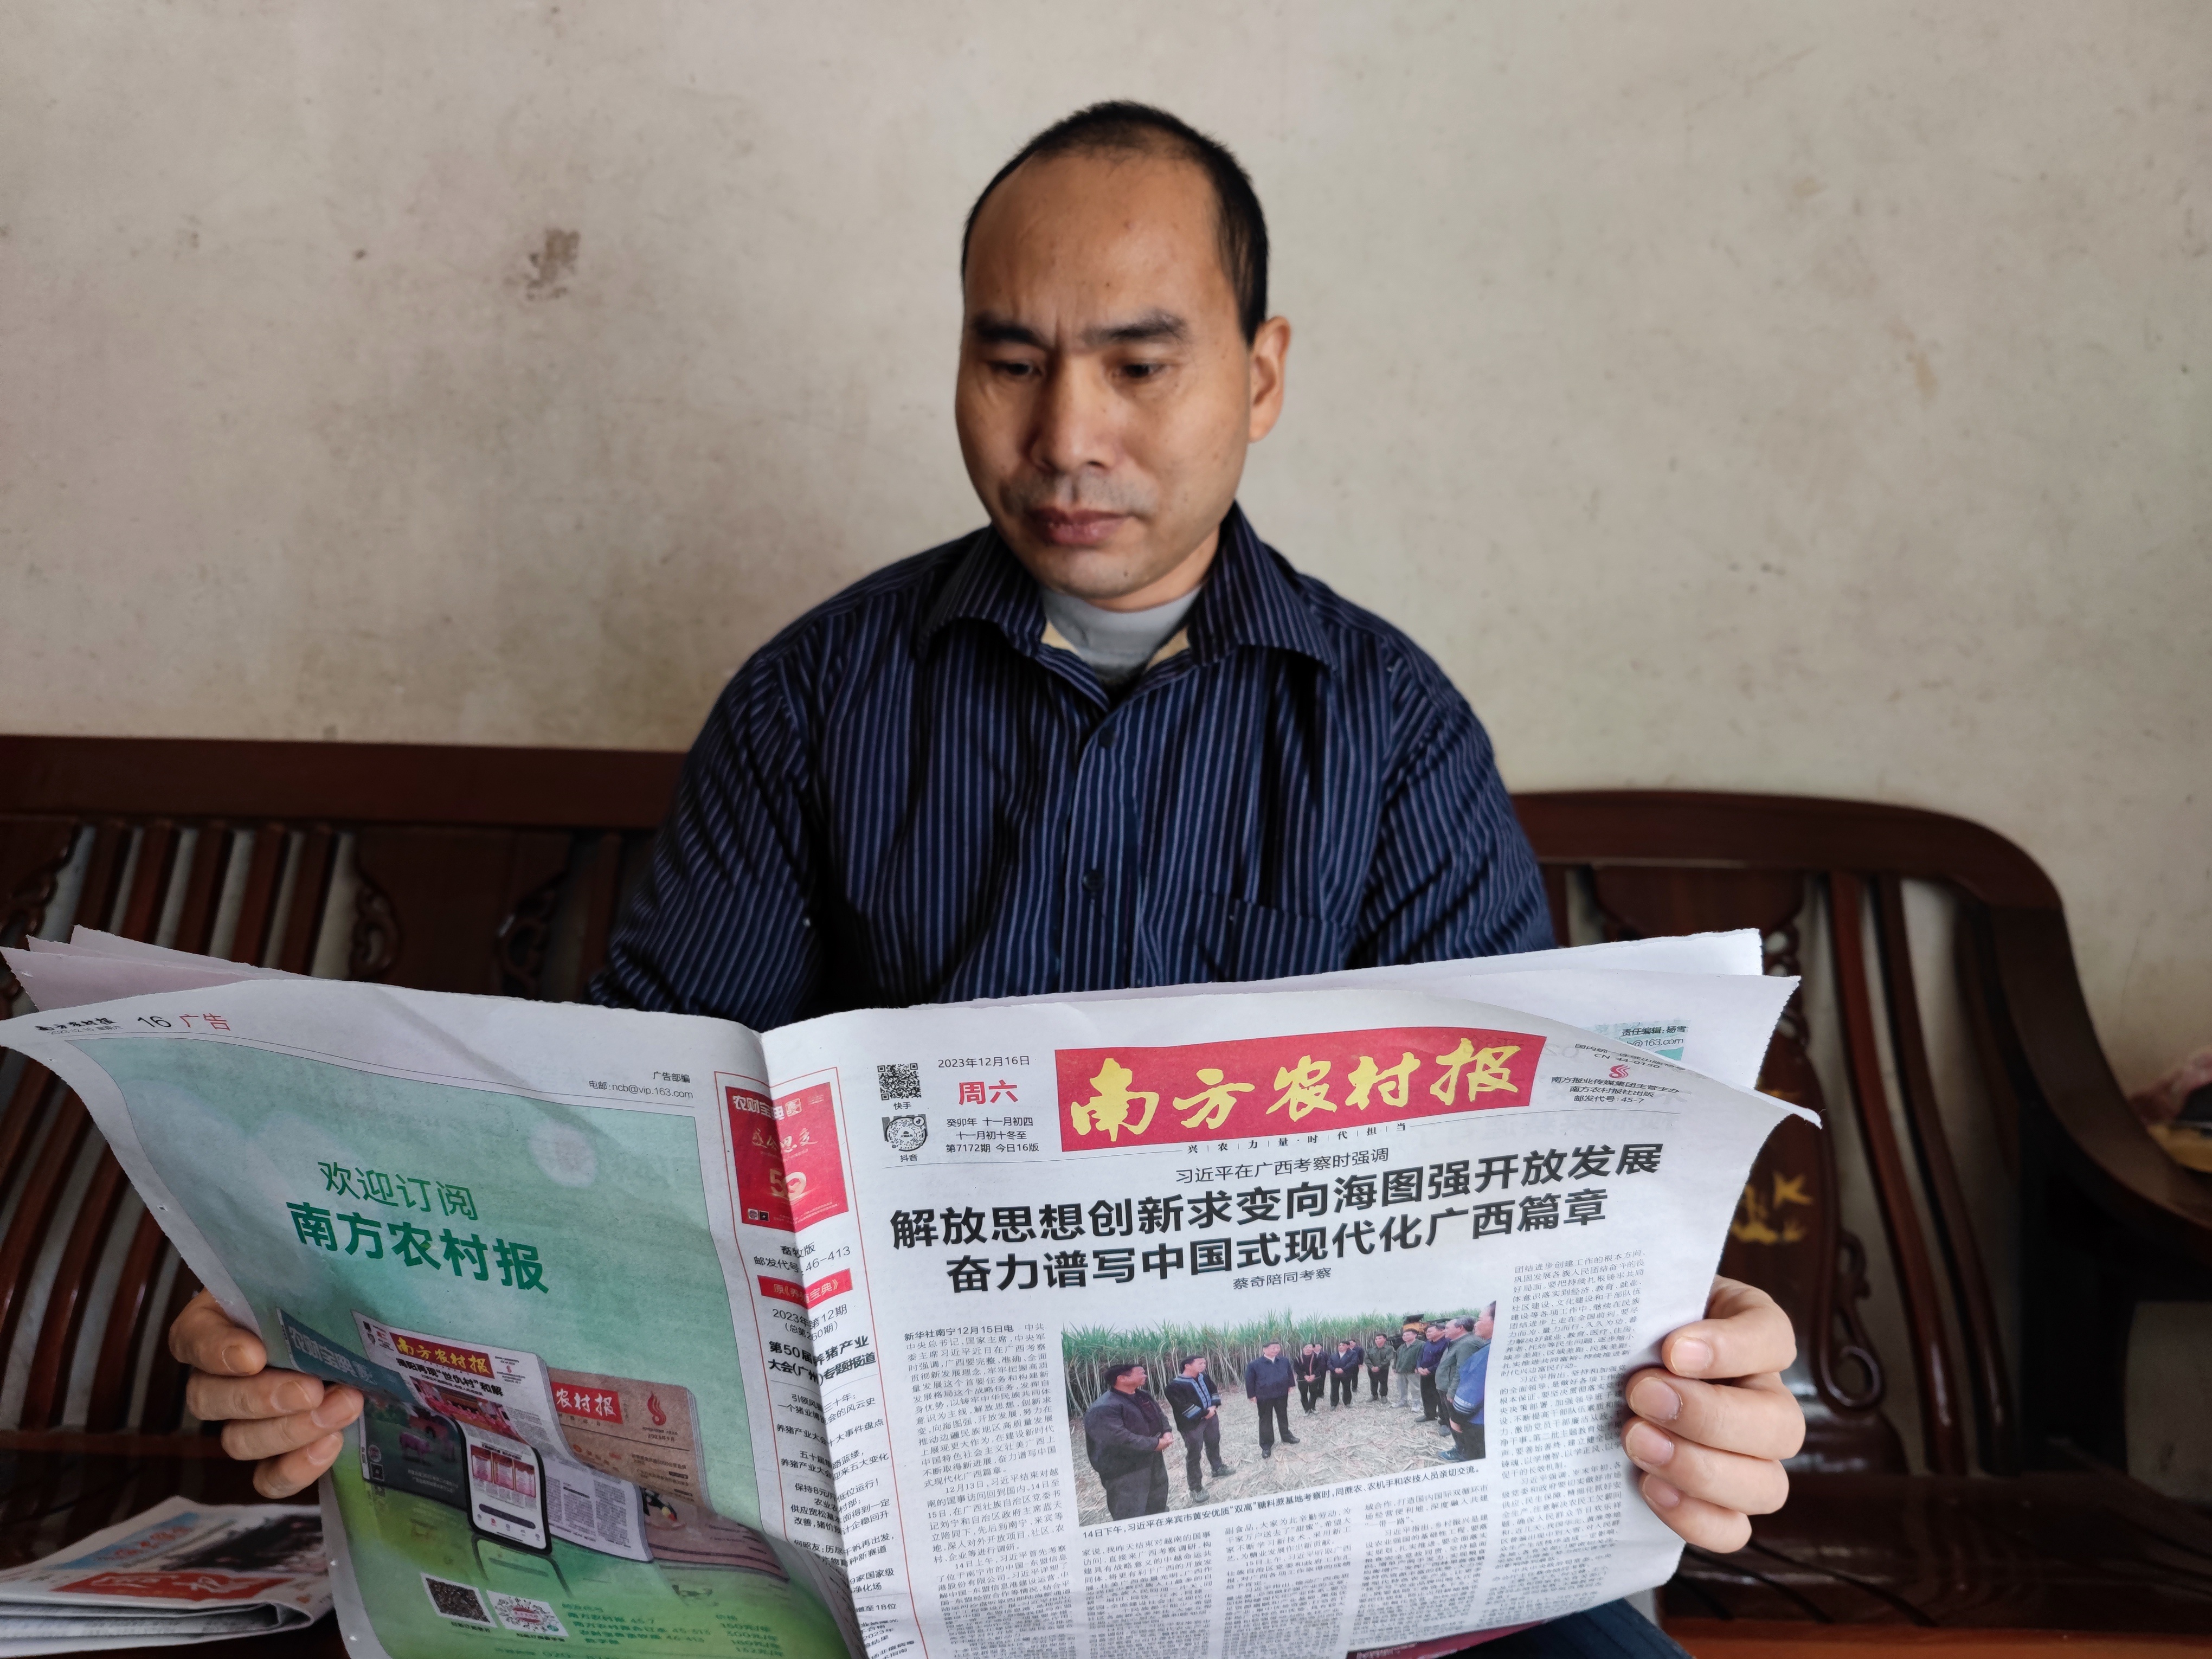 阅读《南方农村报》是吴京吴京的日常。